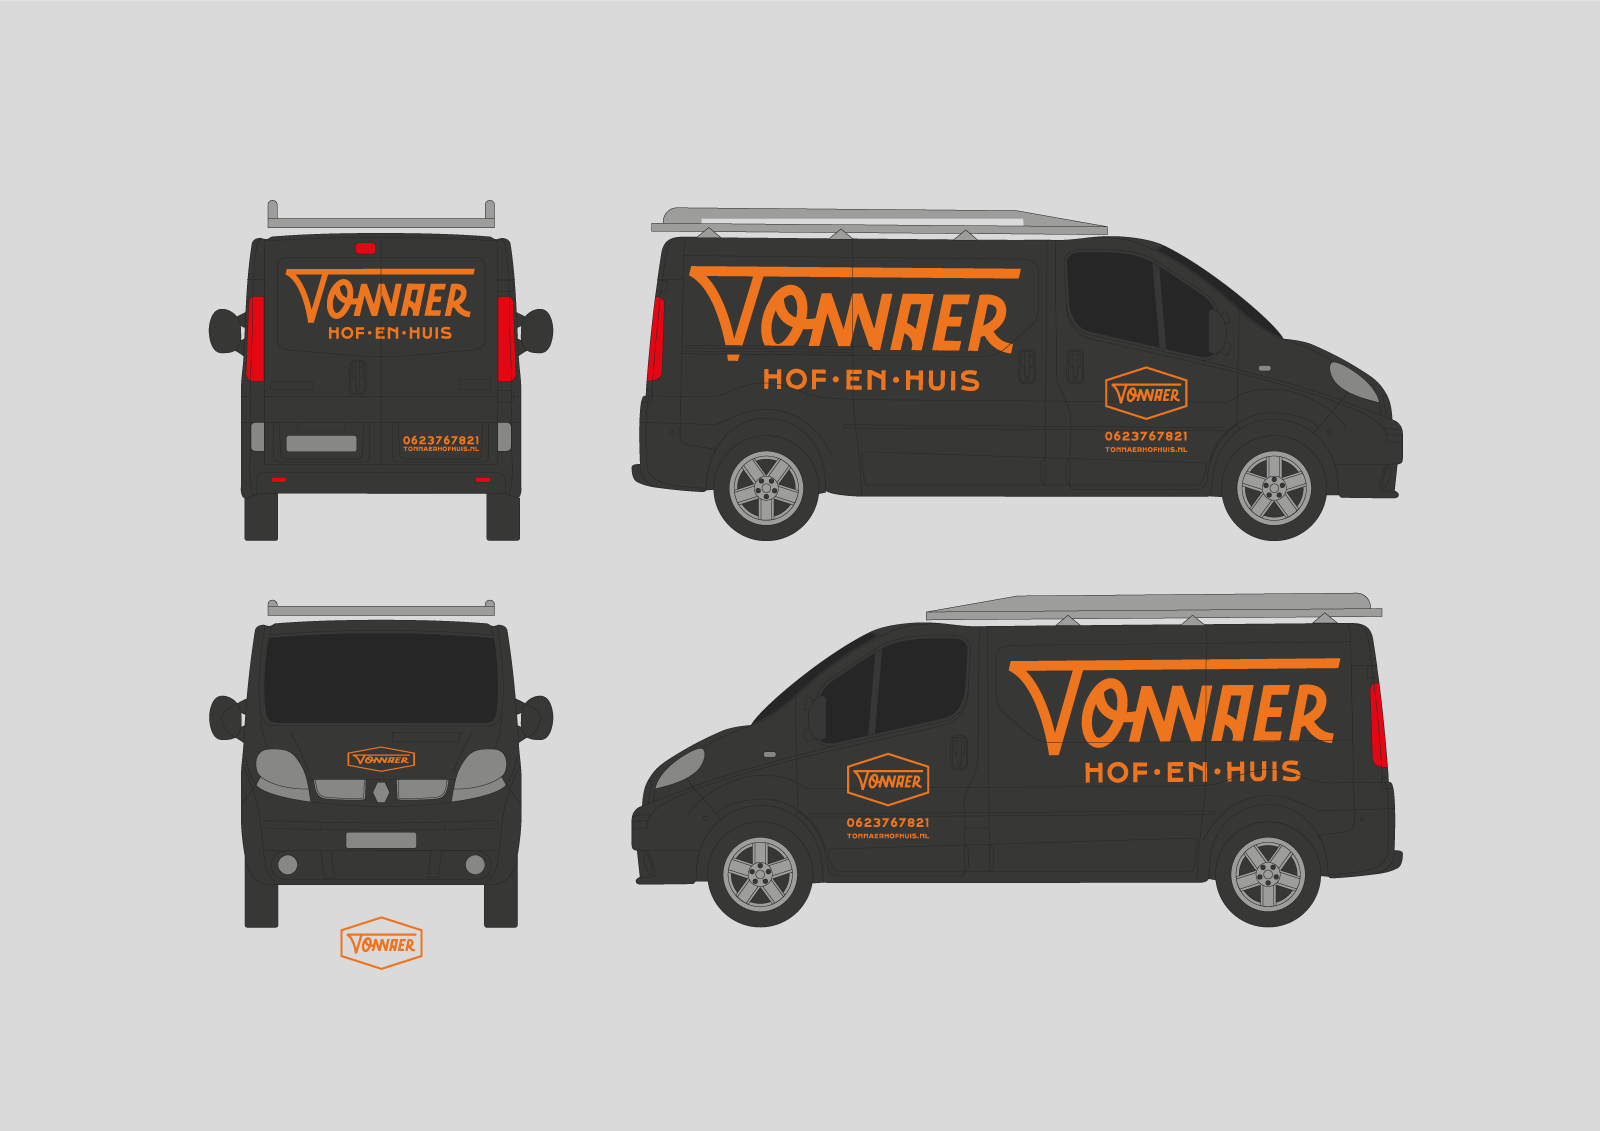 [wide] Van design